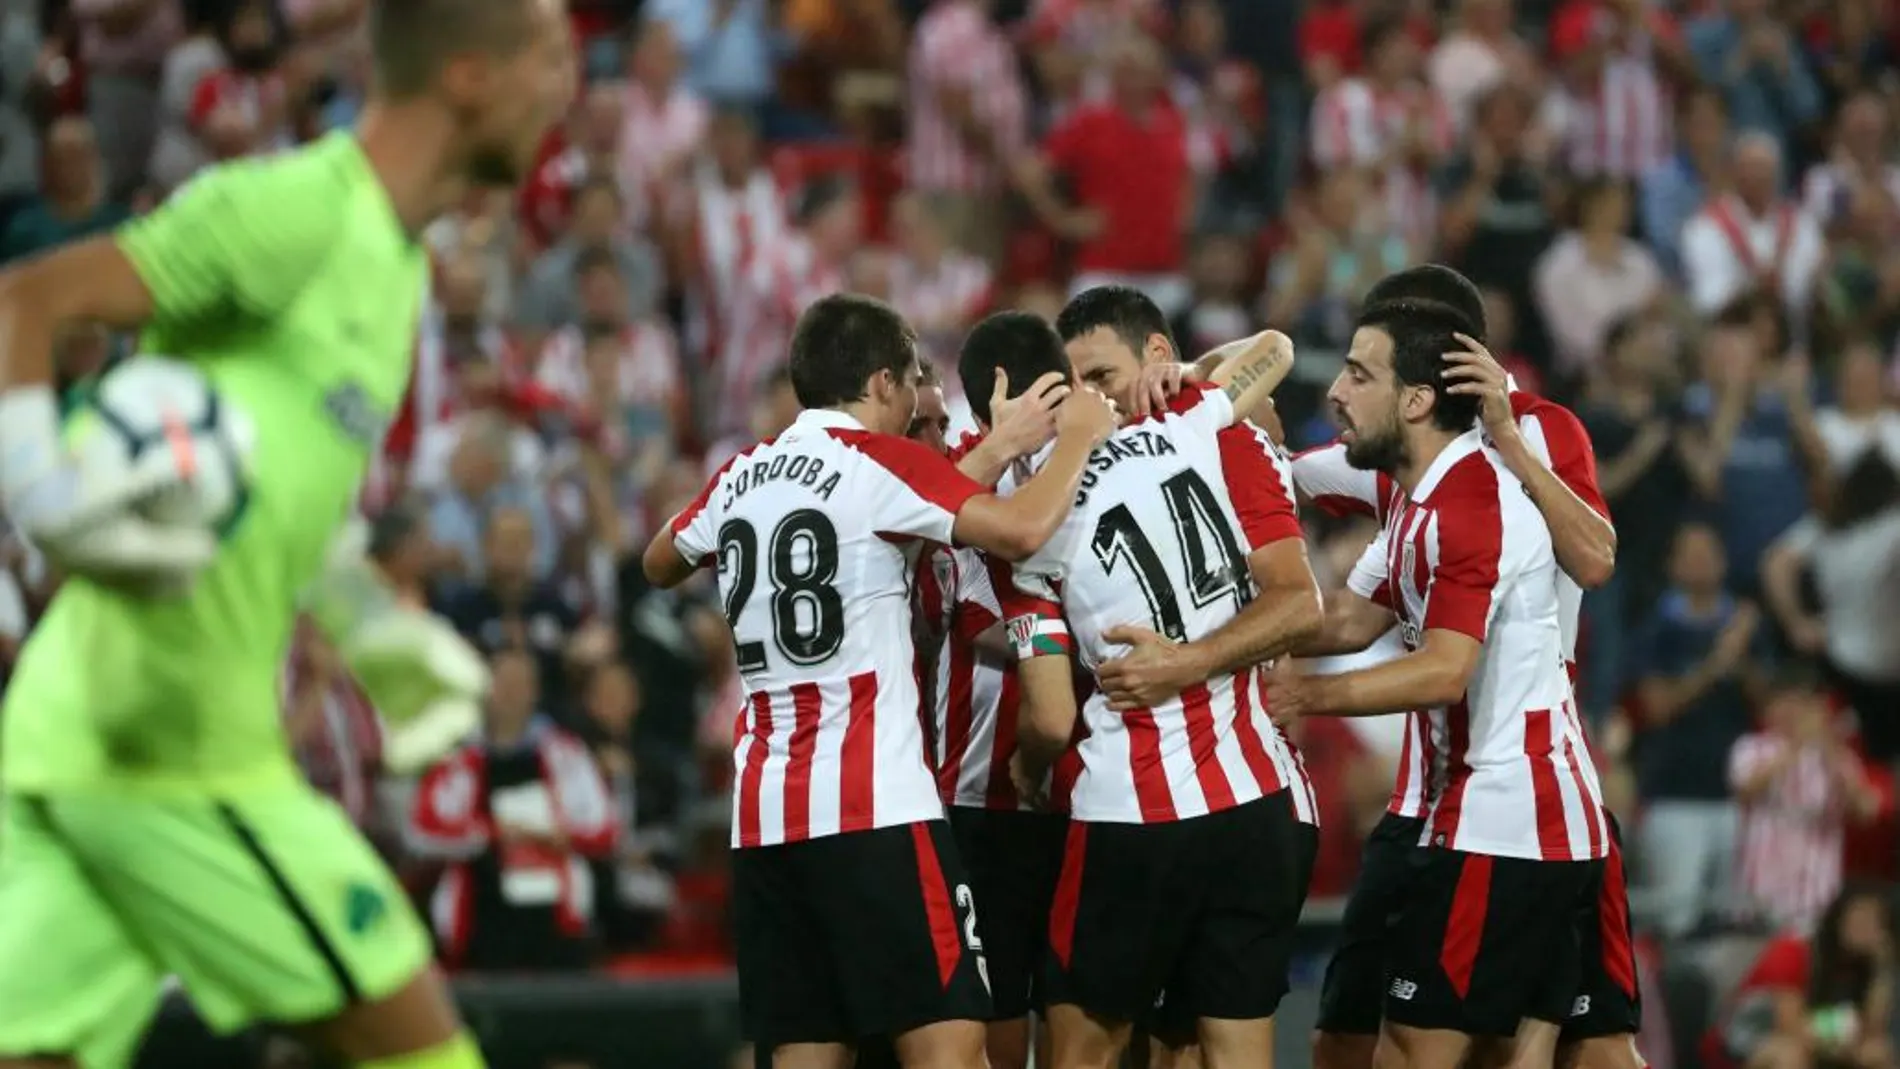 Los jugadores del Athletic de Bilbao celebran el gol marcado por su compañero Iker Muniain ante el Panathinaikos